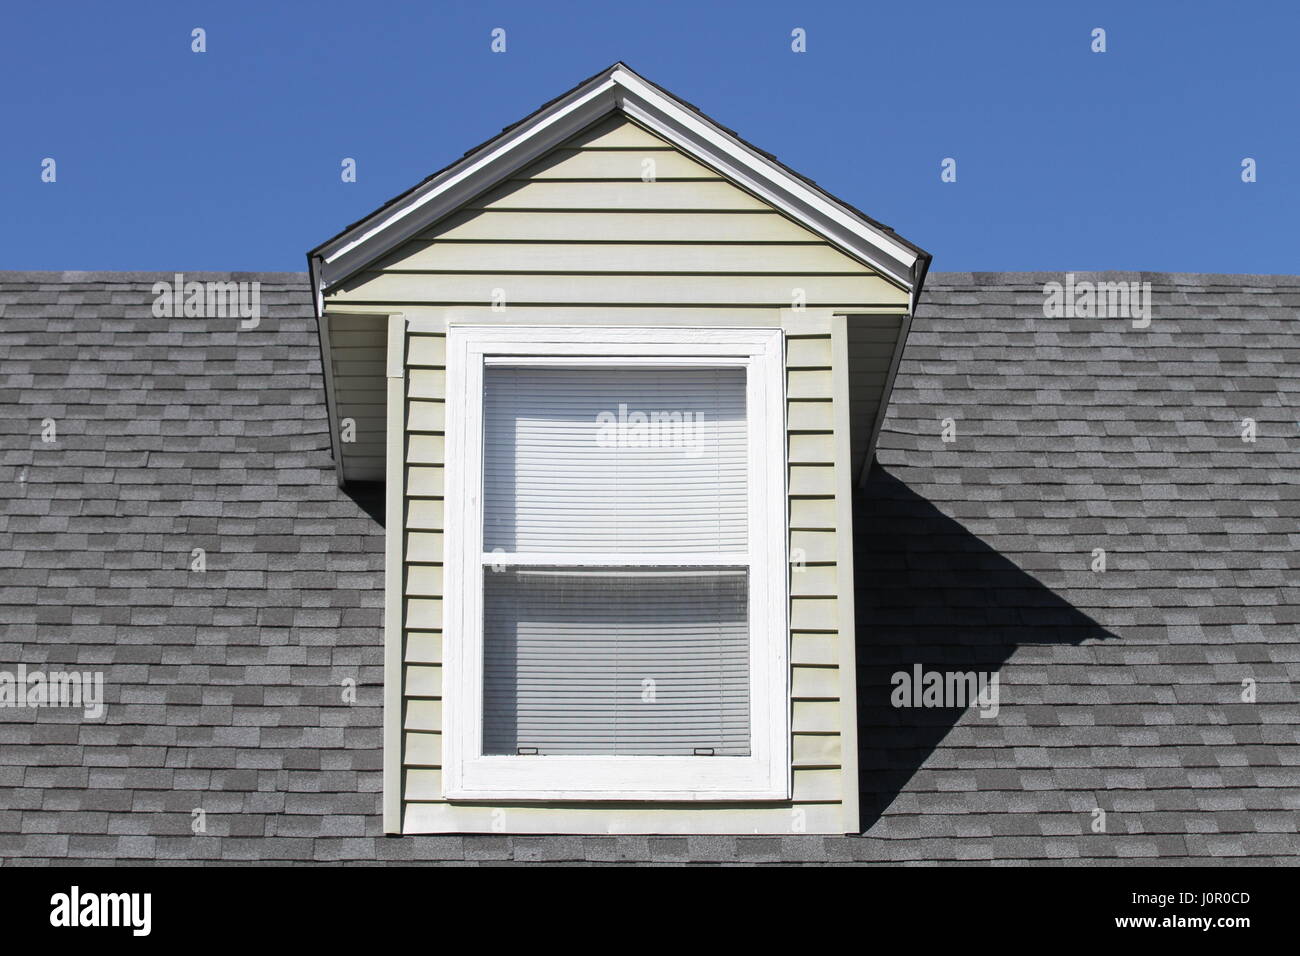 Opinión Sobre Asphalt Roofing Shingles Background Tablas Del Tejado -  Techumbre Asphalt Roofing Shingles Hammer, Guantes Y Clavos Foto de archivo  - Imagen de tipo, coste: 94473726